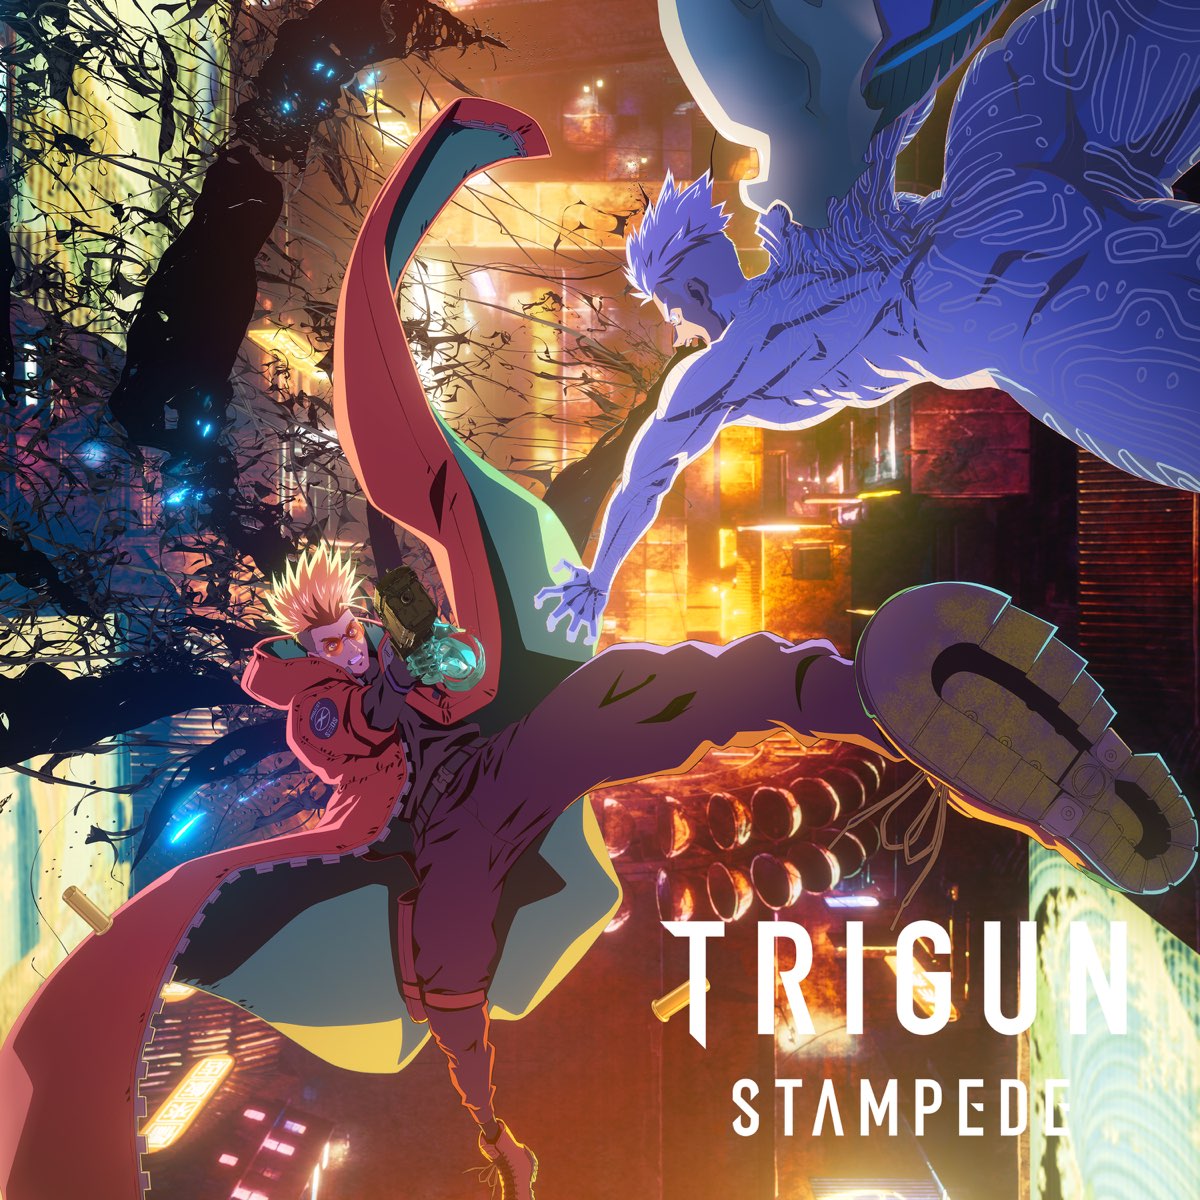 Assistir Trigun Stampede Episódio 2 Online - Animes BR